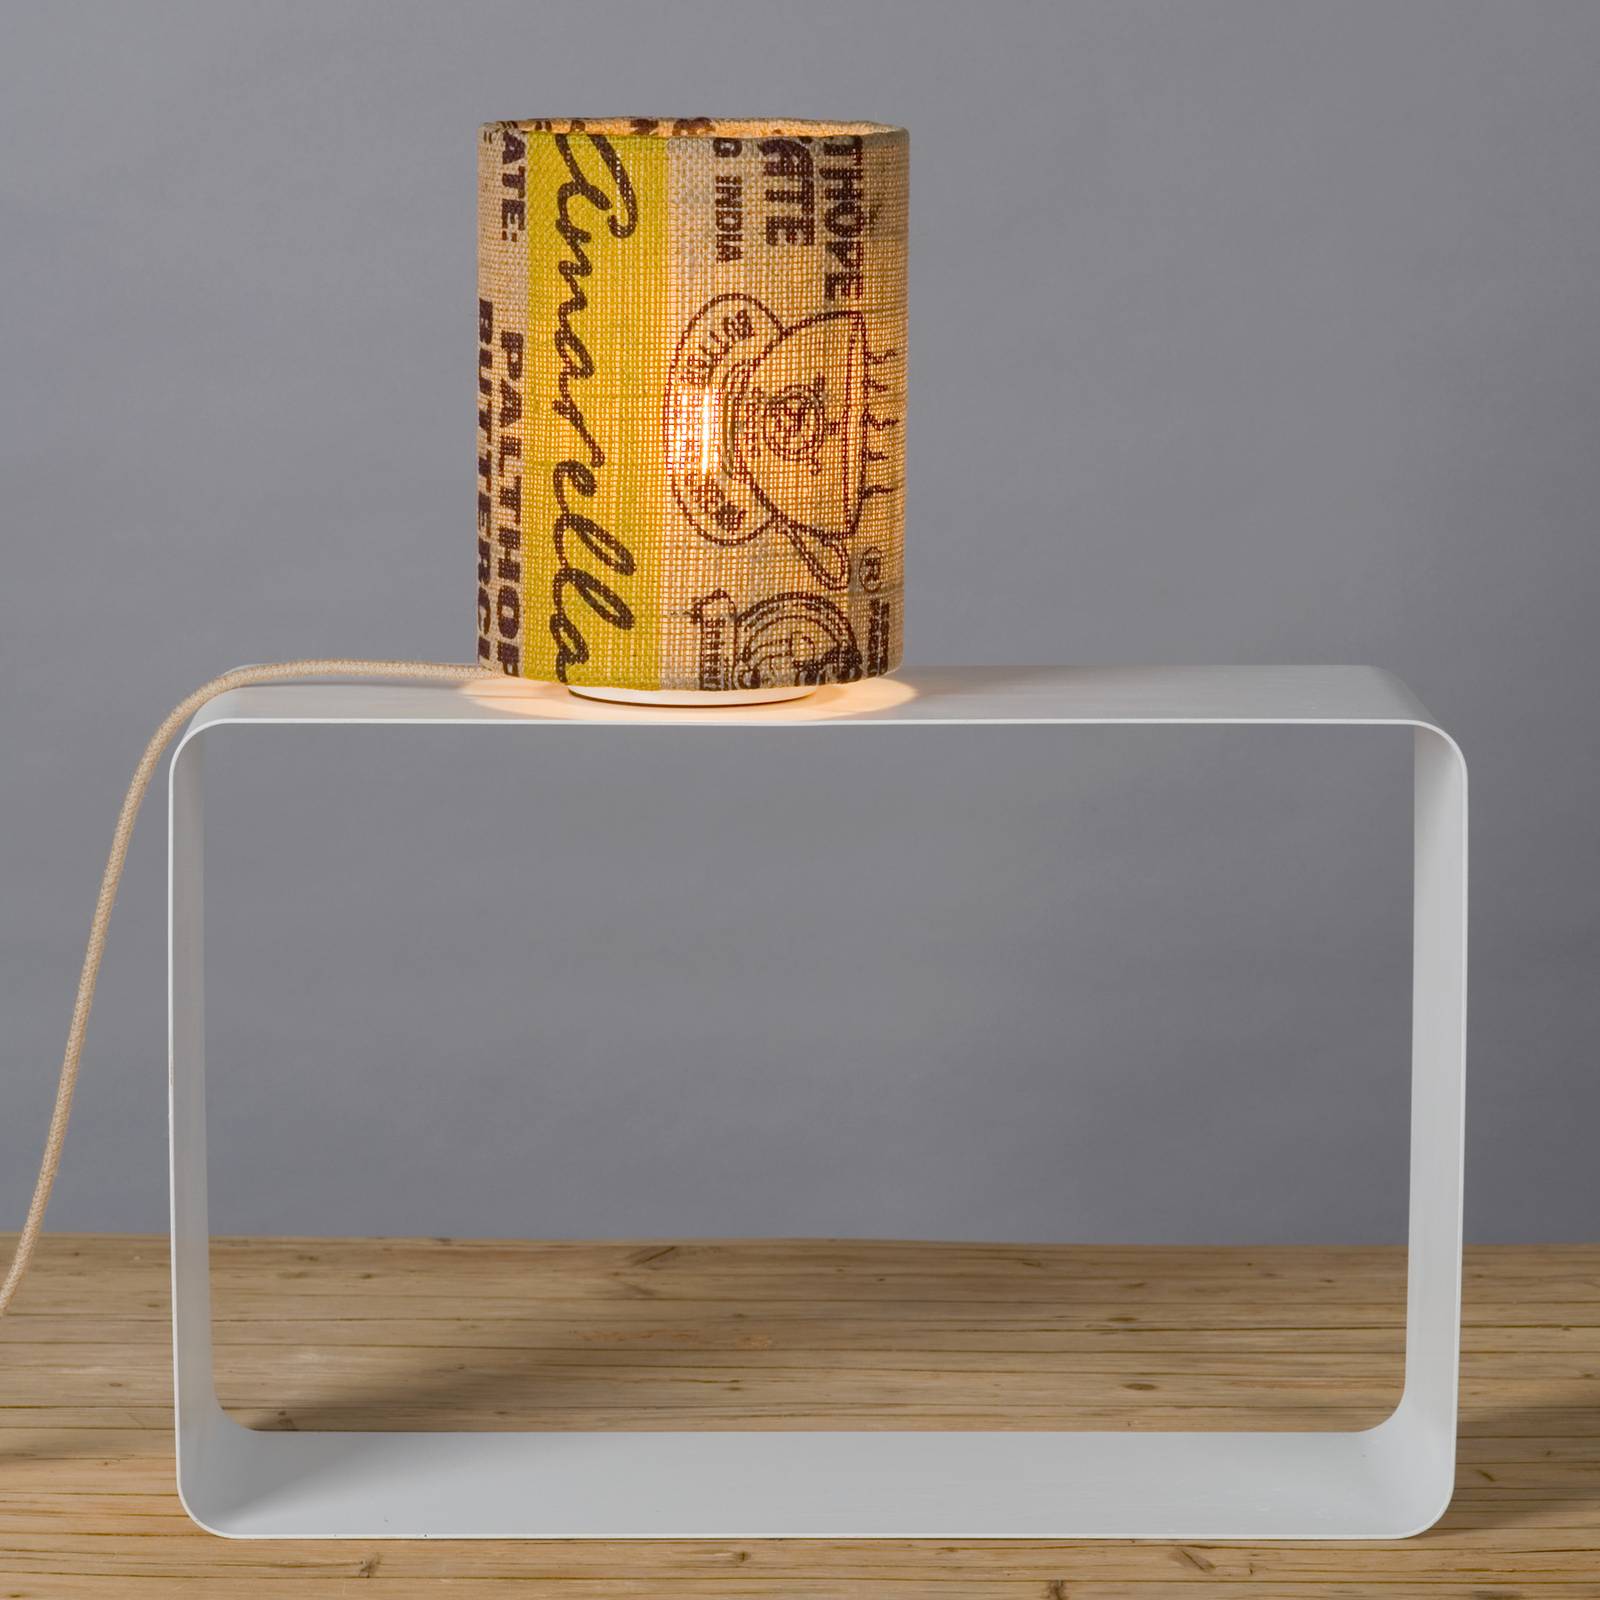 Lumbono lámpa n°16 perlbohne kávézacskóból készült ernyő